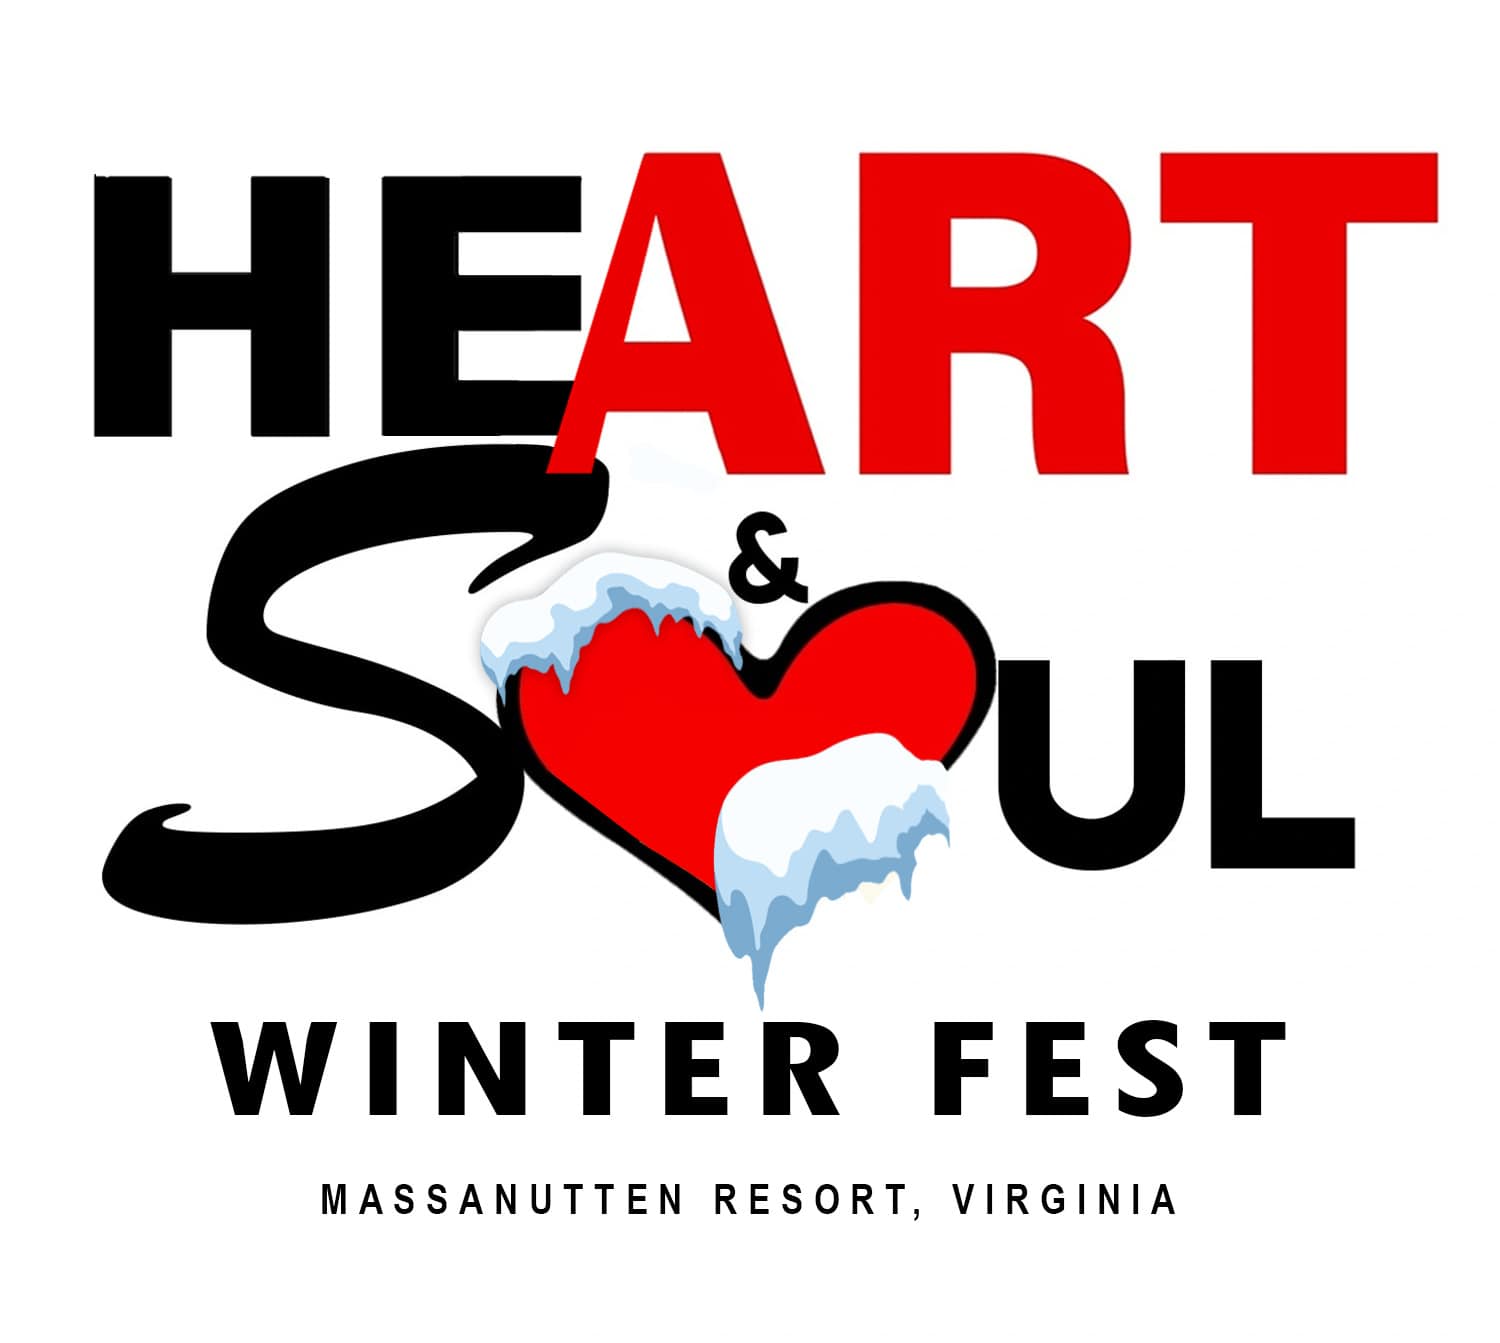 Heart & SOUL Winter Fest logo for Massanutten Resort event